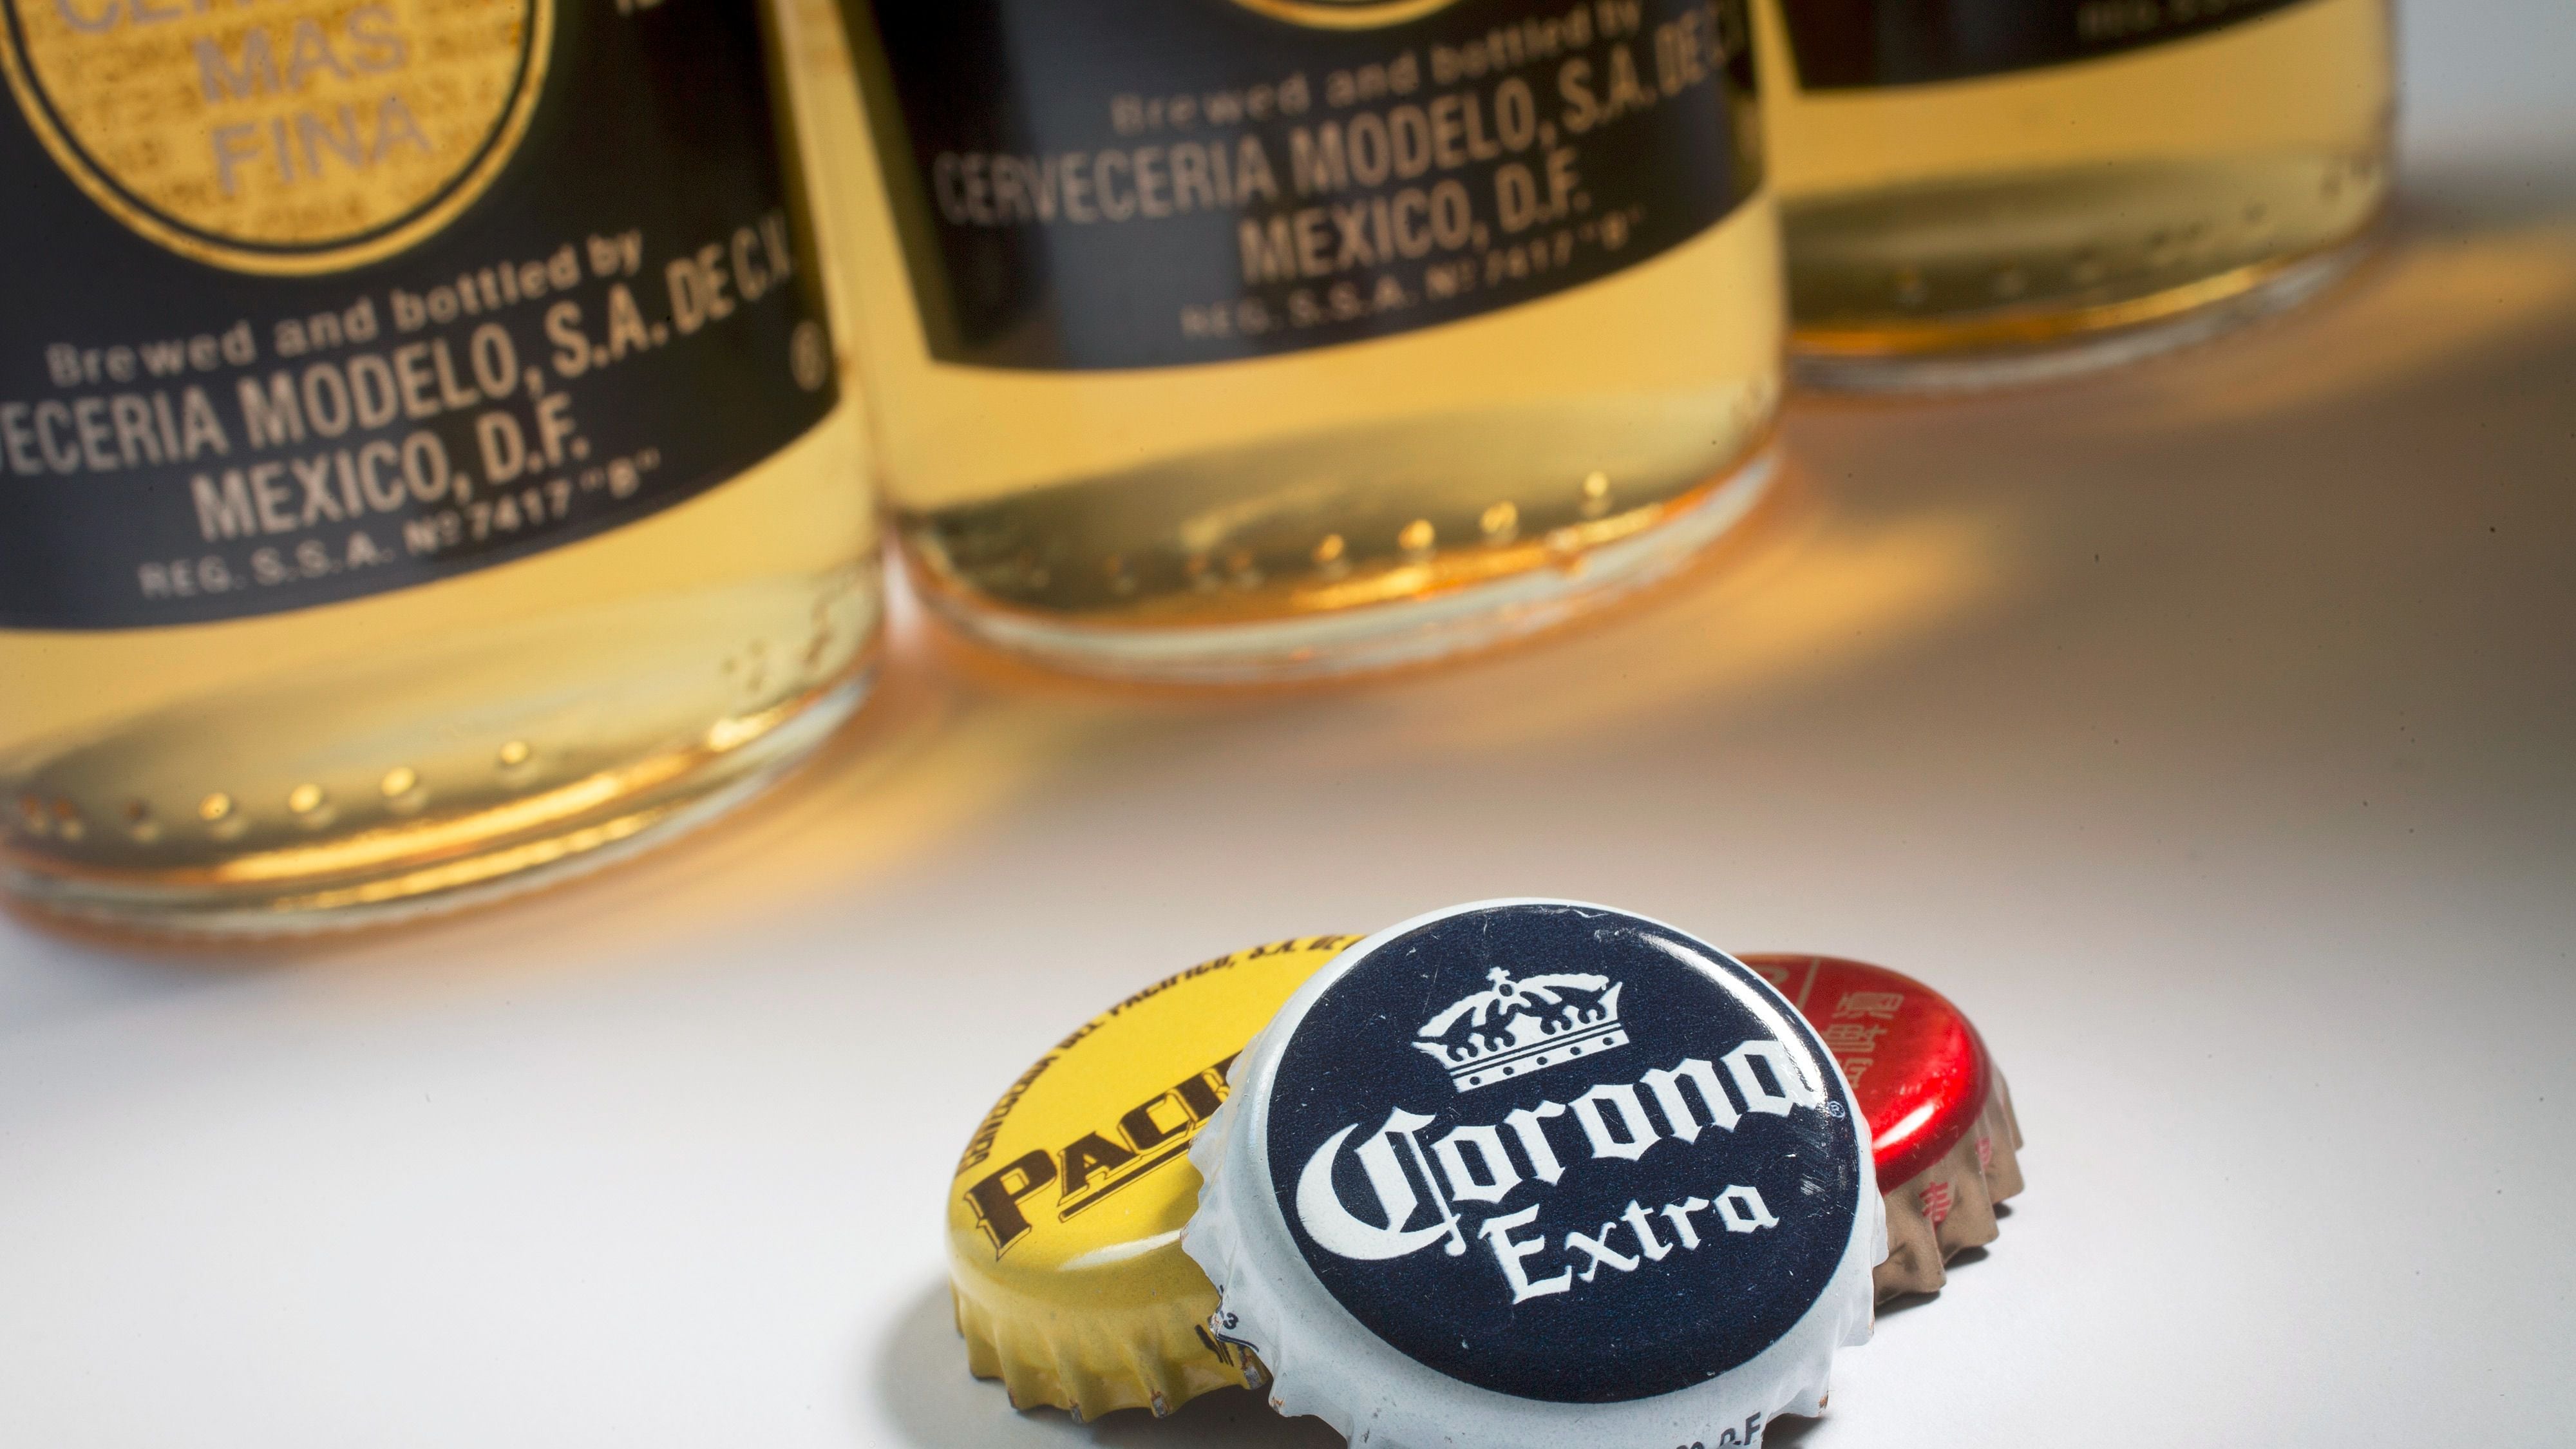 Comenzarán a vender cerveza Corona en el OXXO – El Financiero